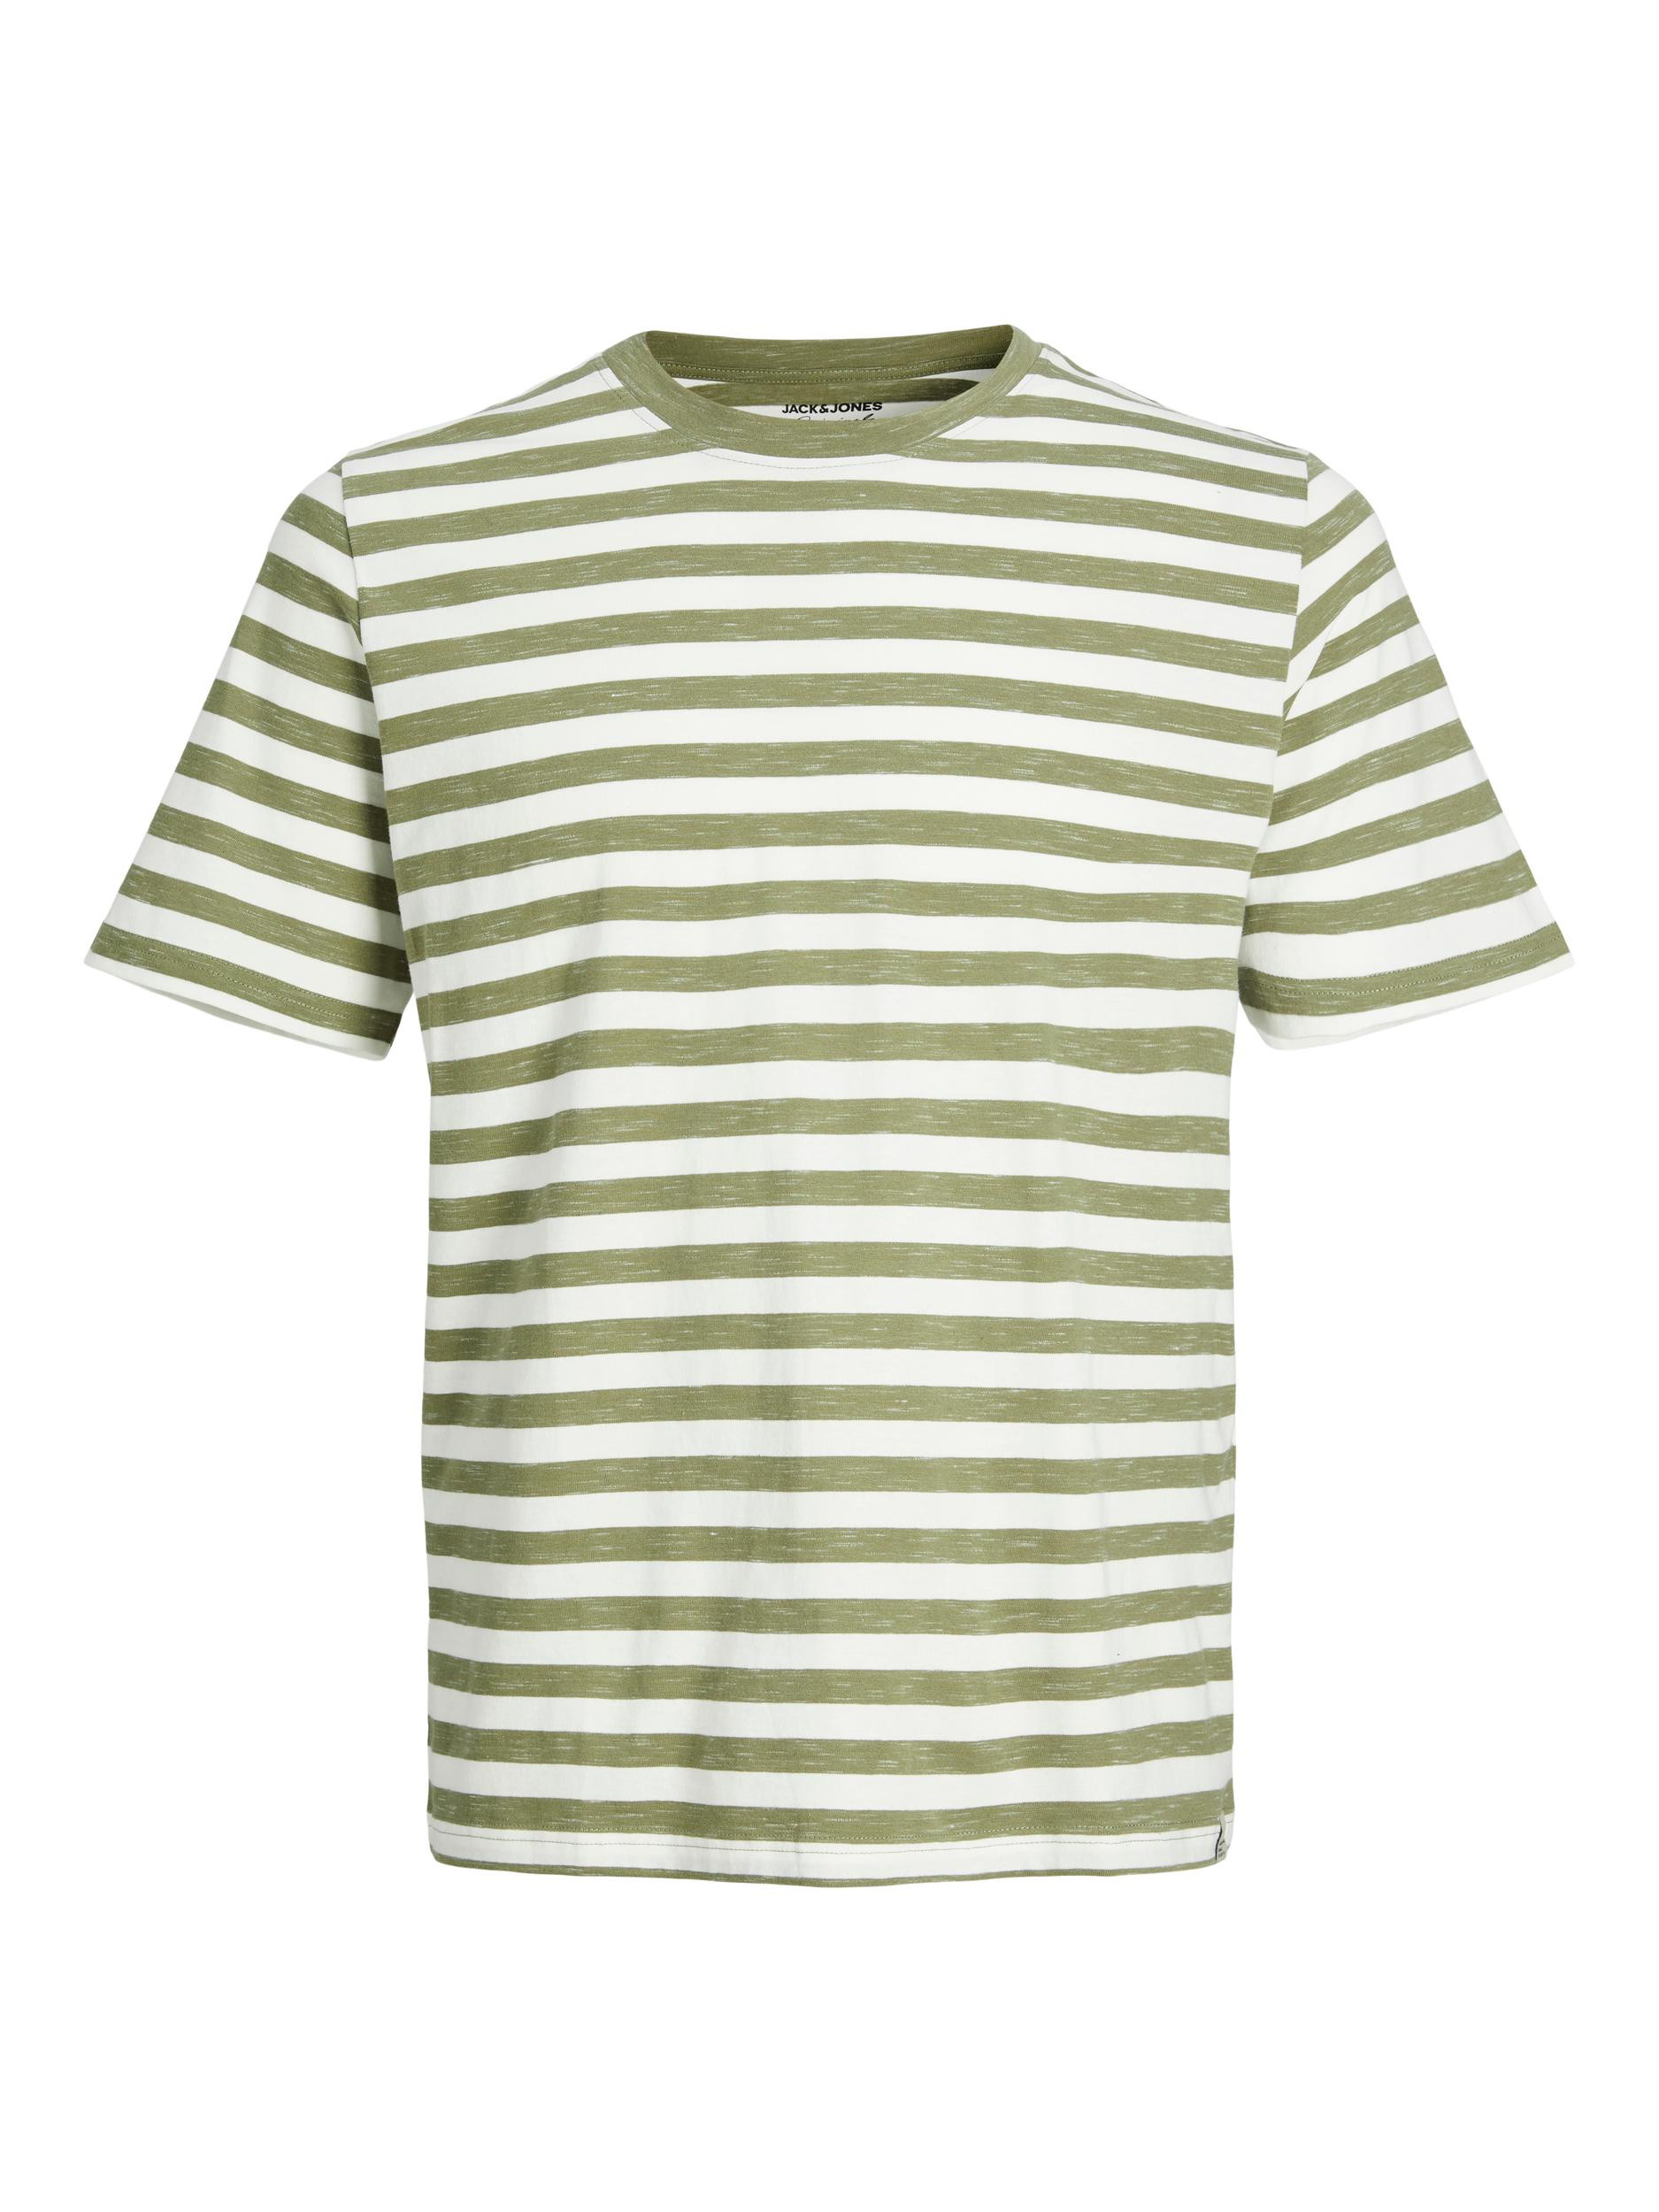 Jack & Jones - Striped T-Shirt, Light Green, large image number 0